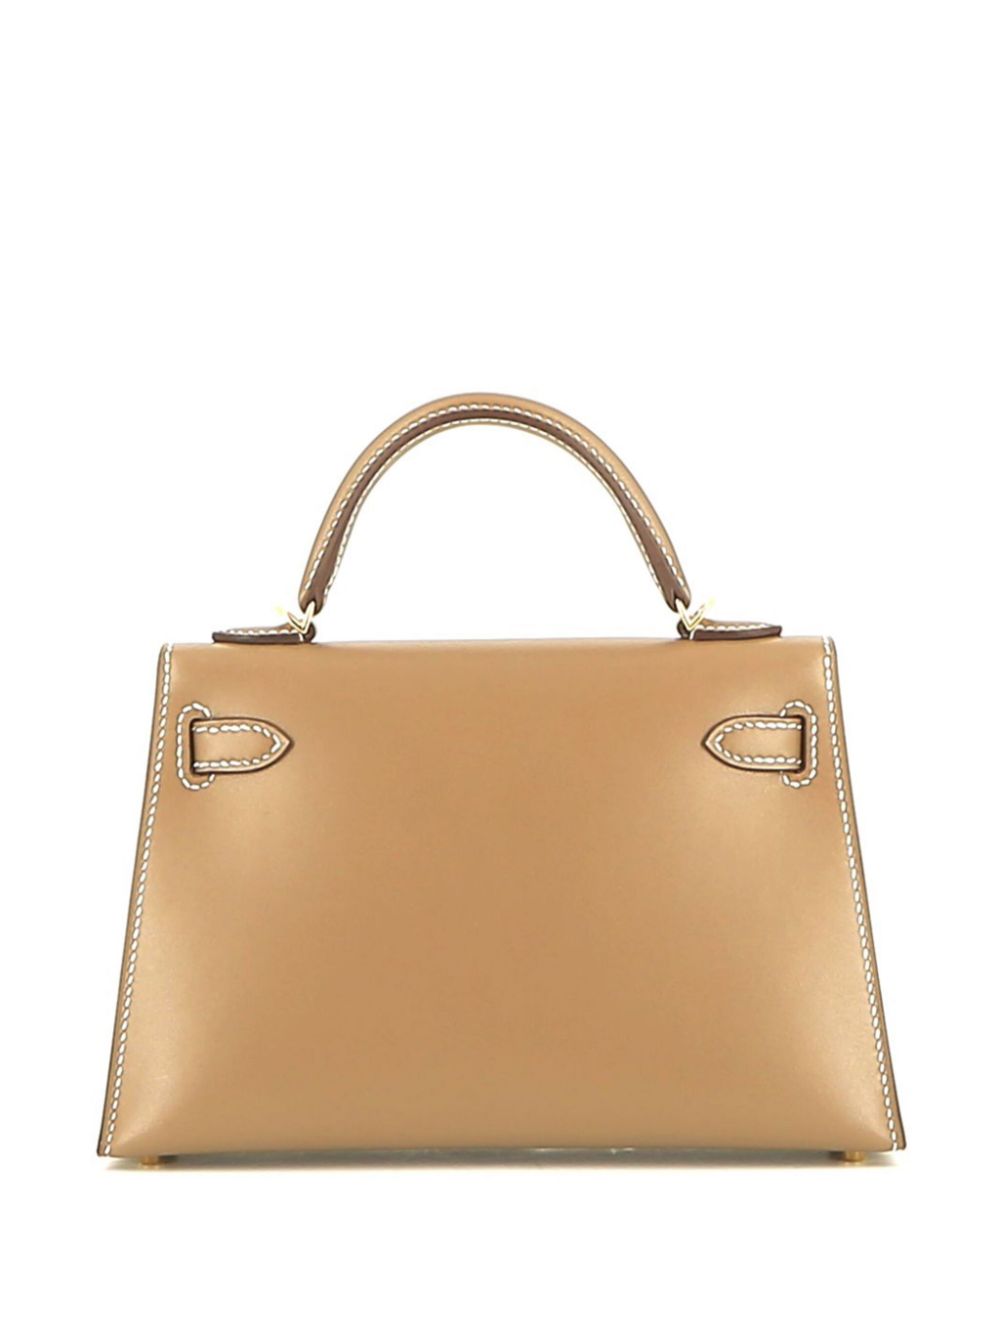 Hermès 2022 pre-owned Kelly 20 two-way handbag - Beige